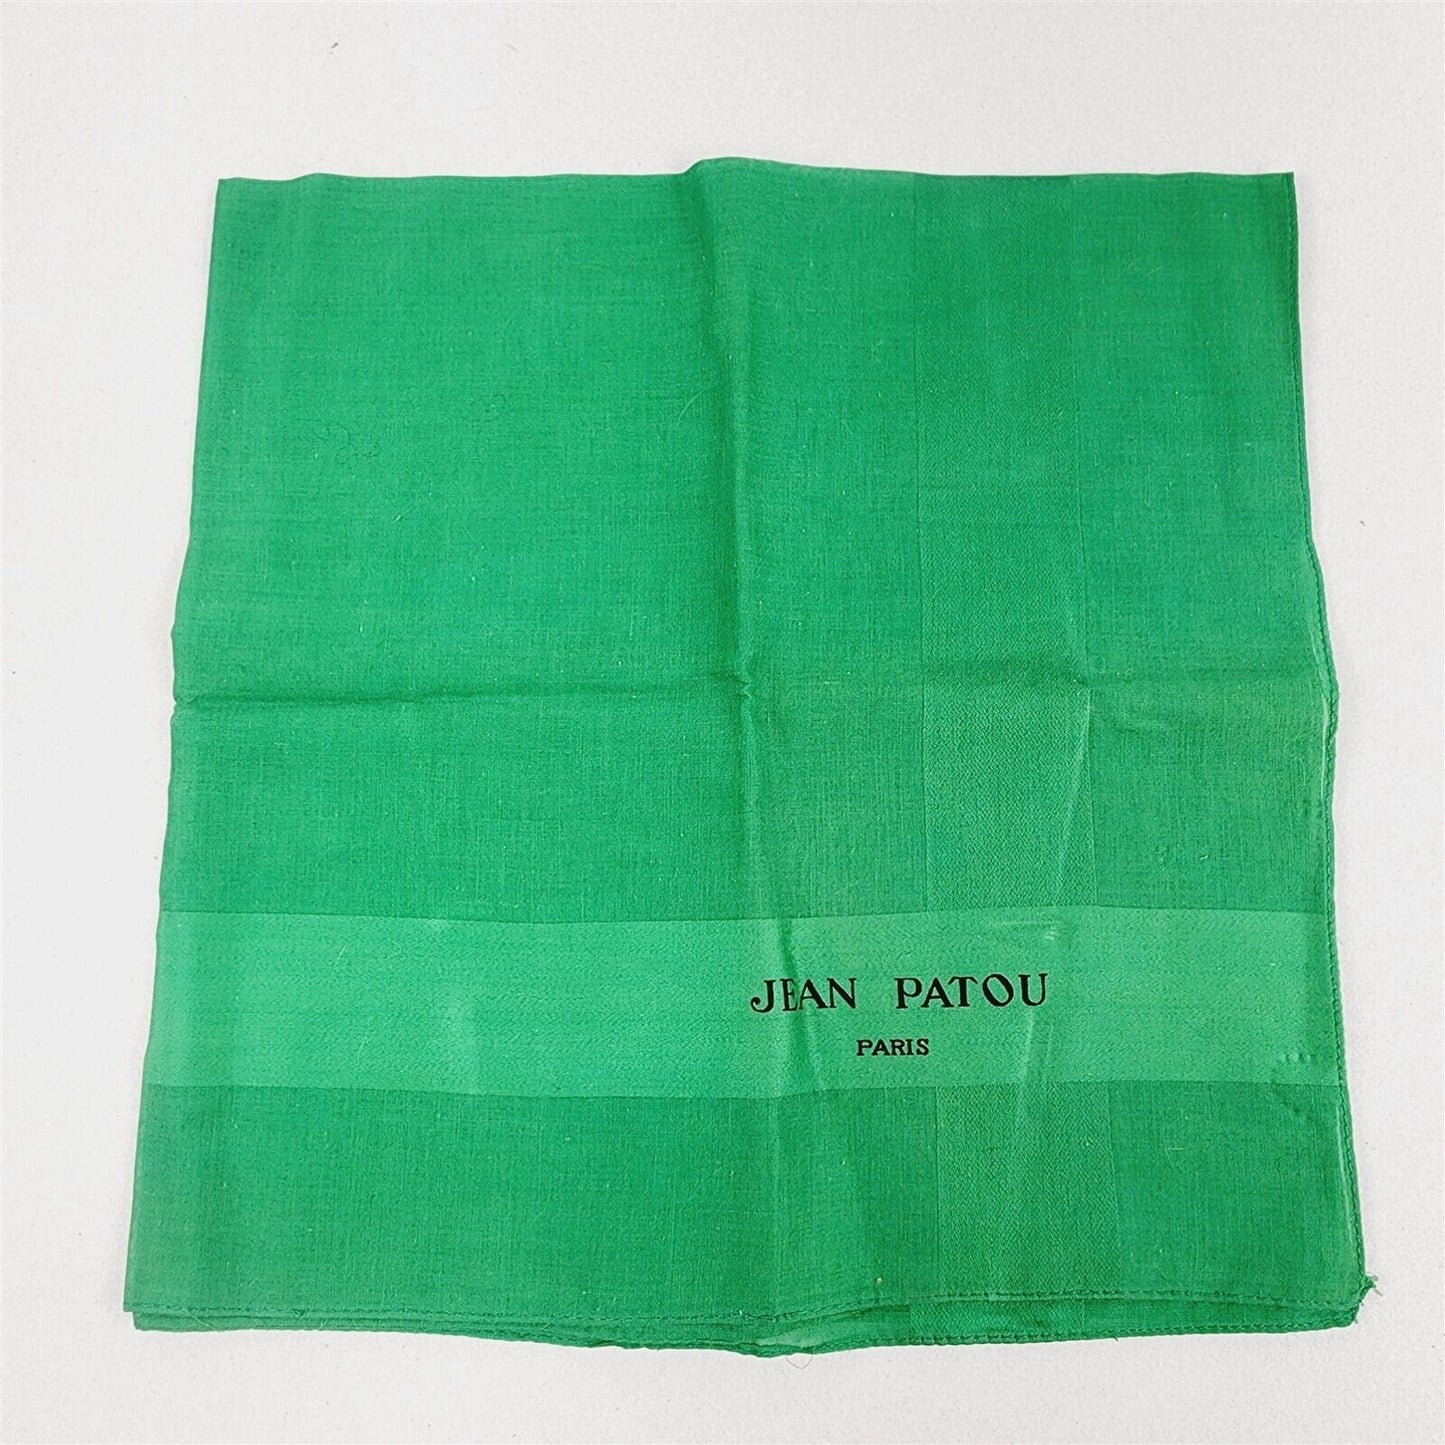 Vintage Jean Paton Paris Green Silk Square Scarf - 22" x 22"